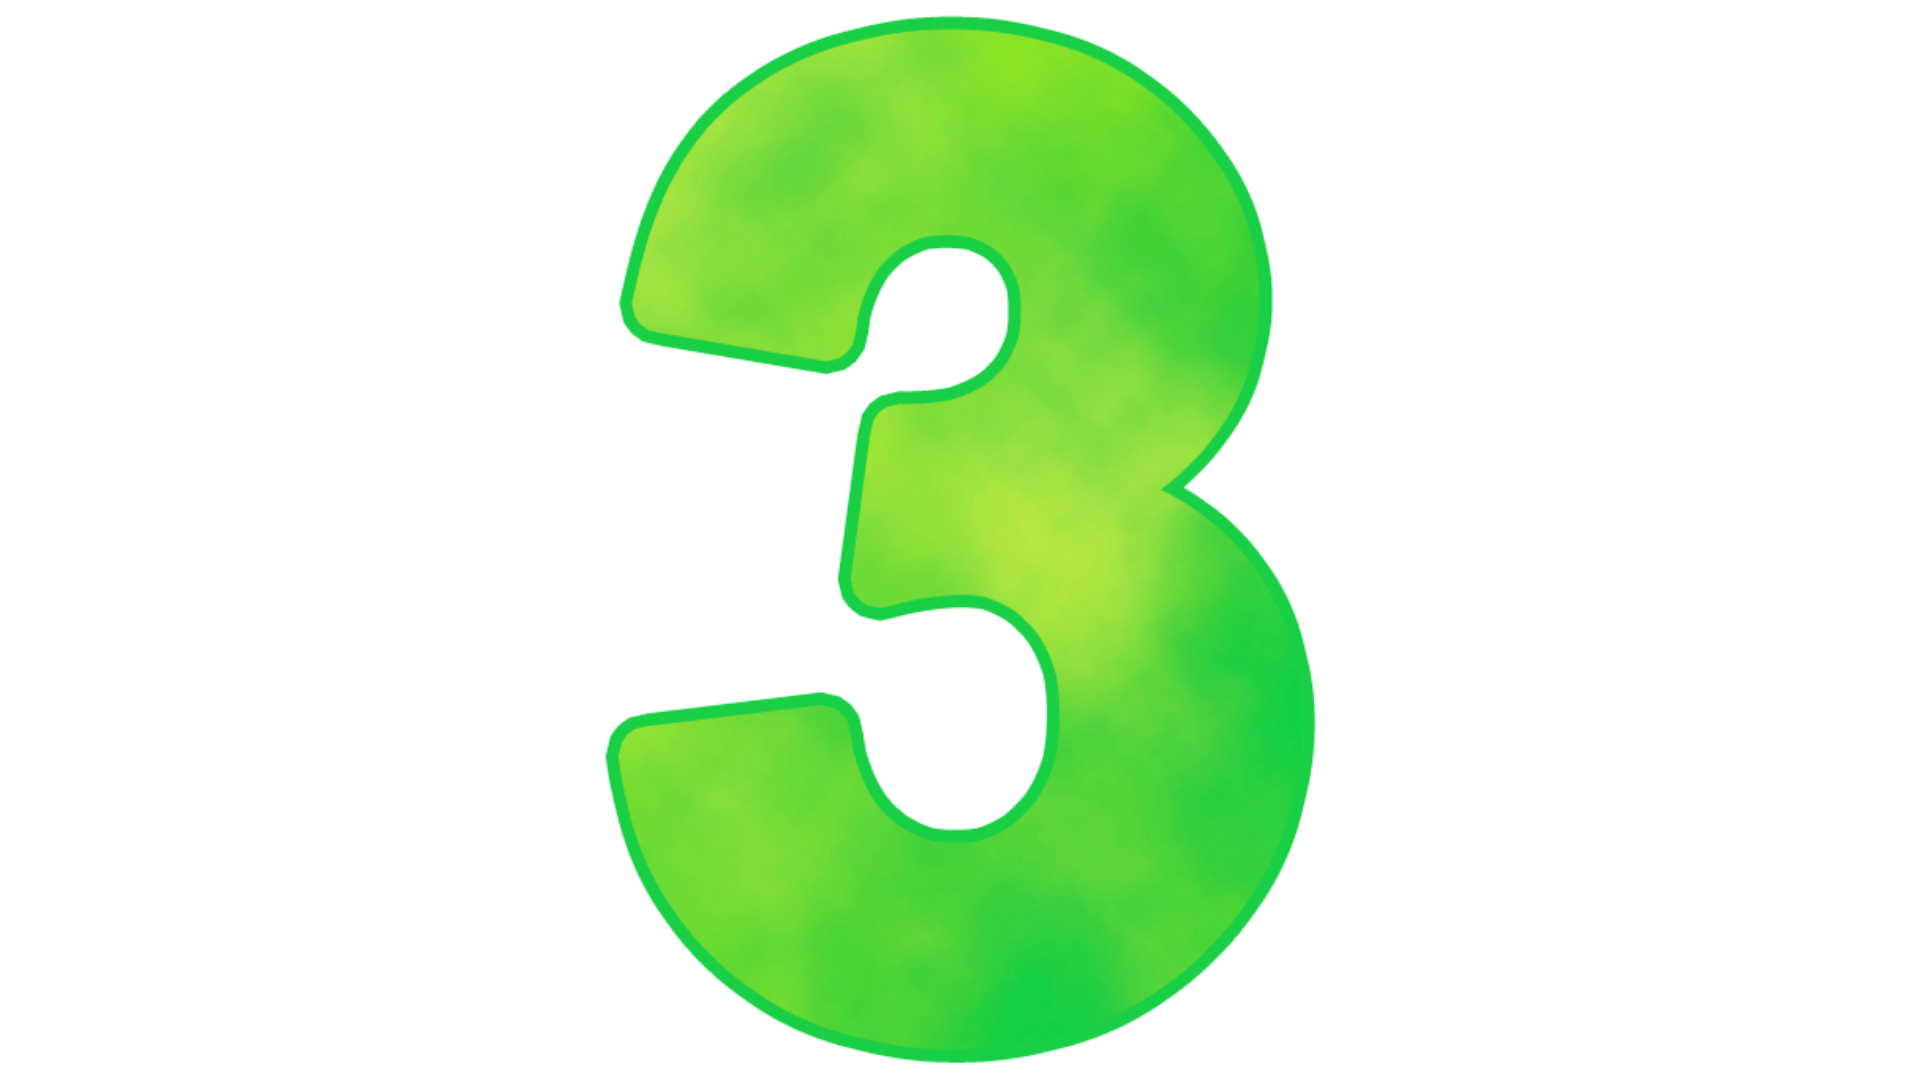 Цифра три. Цифра 3 зеленая. Цифра 3 без фона. Буква з зеленого цвета.